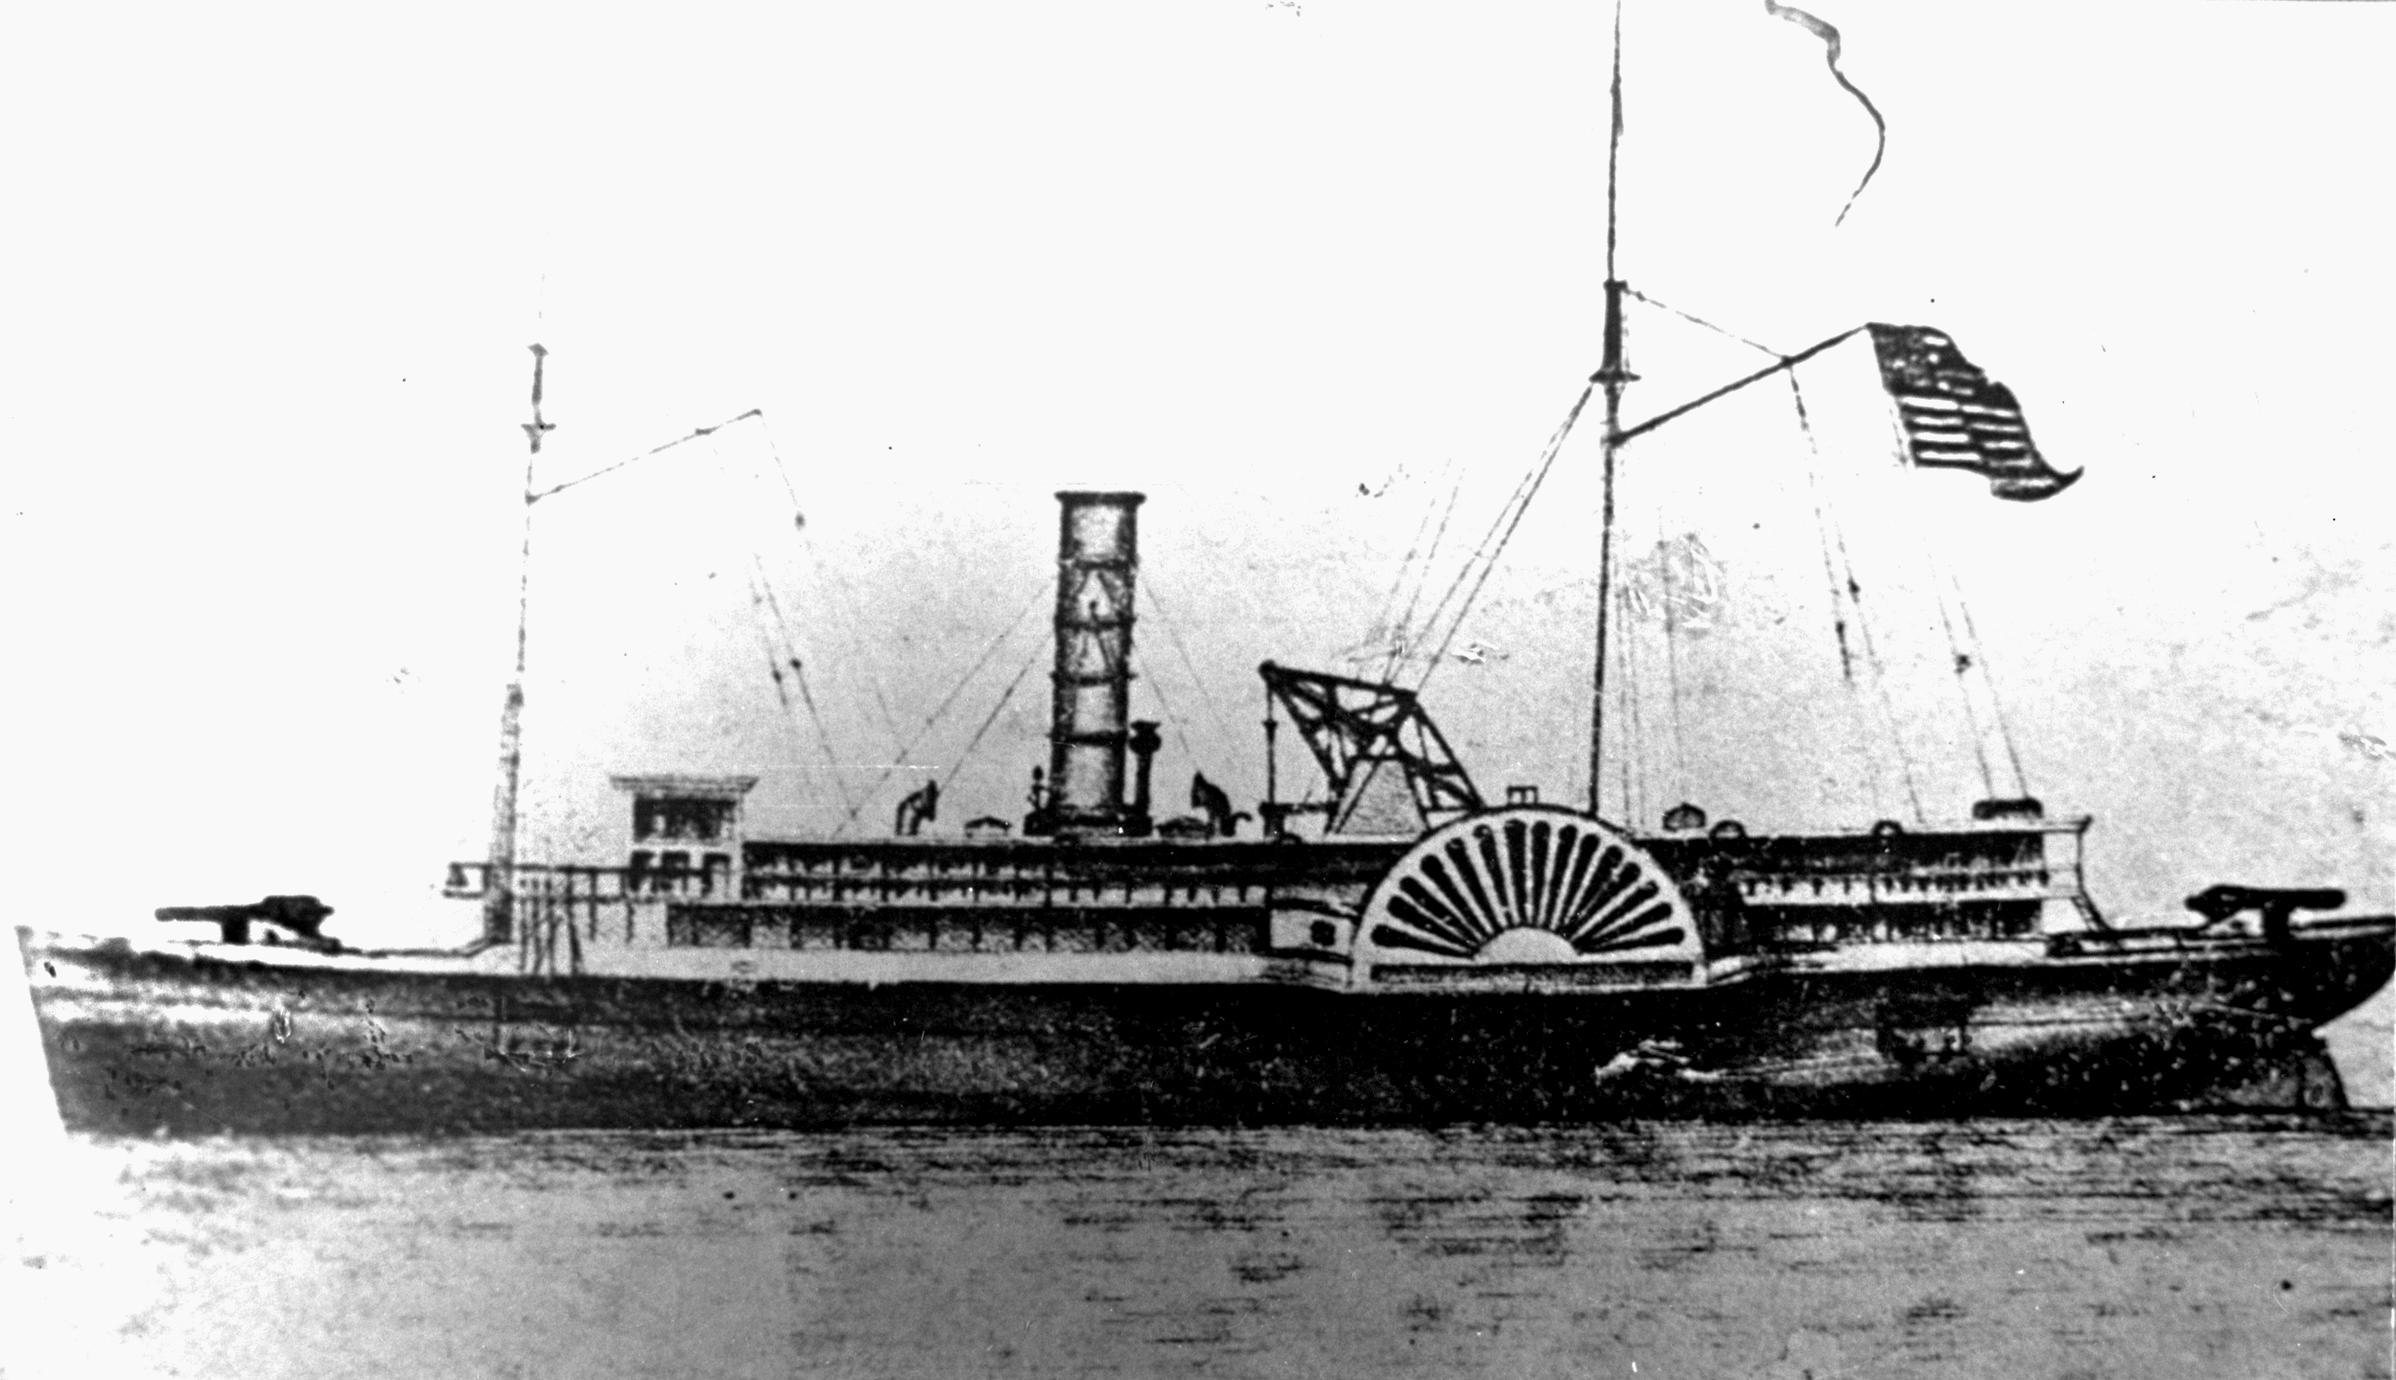 General Bragg (Gunboat/Ram, 1861-1865)